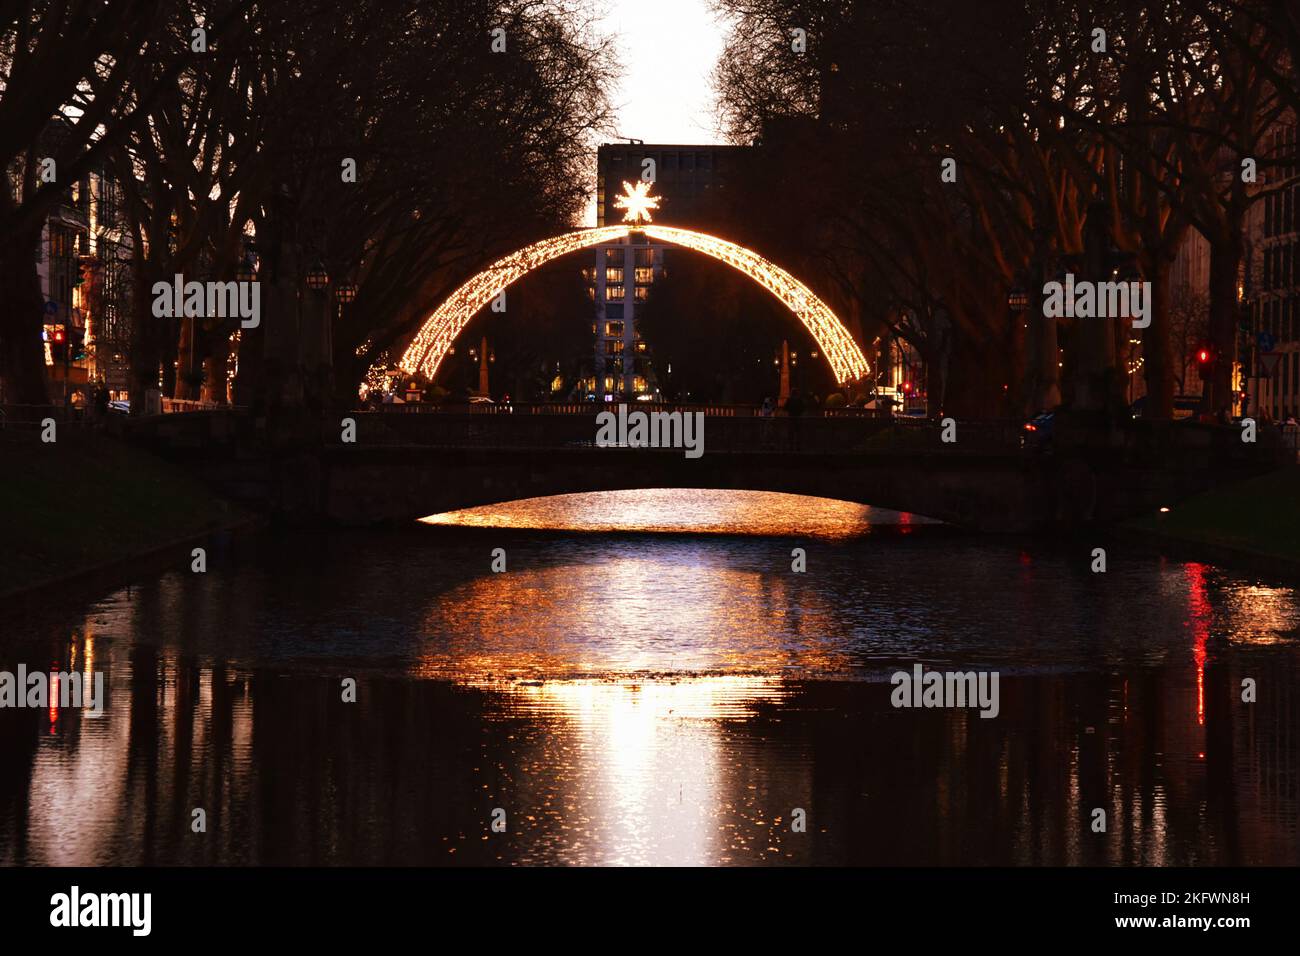 Arco di Natale tradizionale a Königsallee a Düsseldorf. E' simile all'illuminazione natalizia che la città usava avere negli anni '1950s. Foto Stock